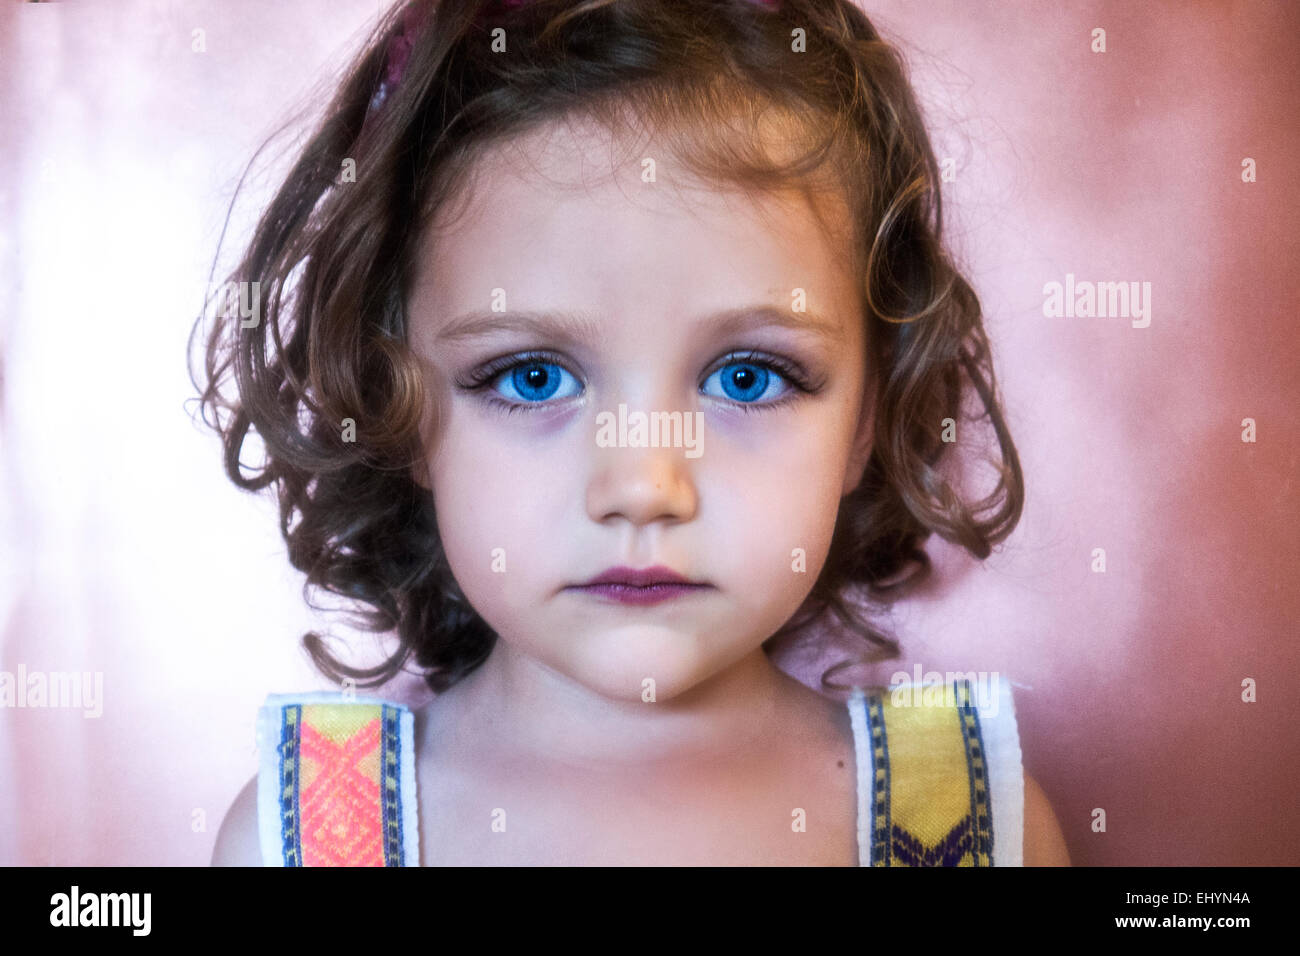 Retrato de una chica con ojos azules penetrantes Foto de stock